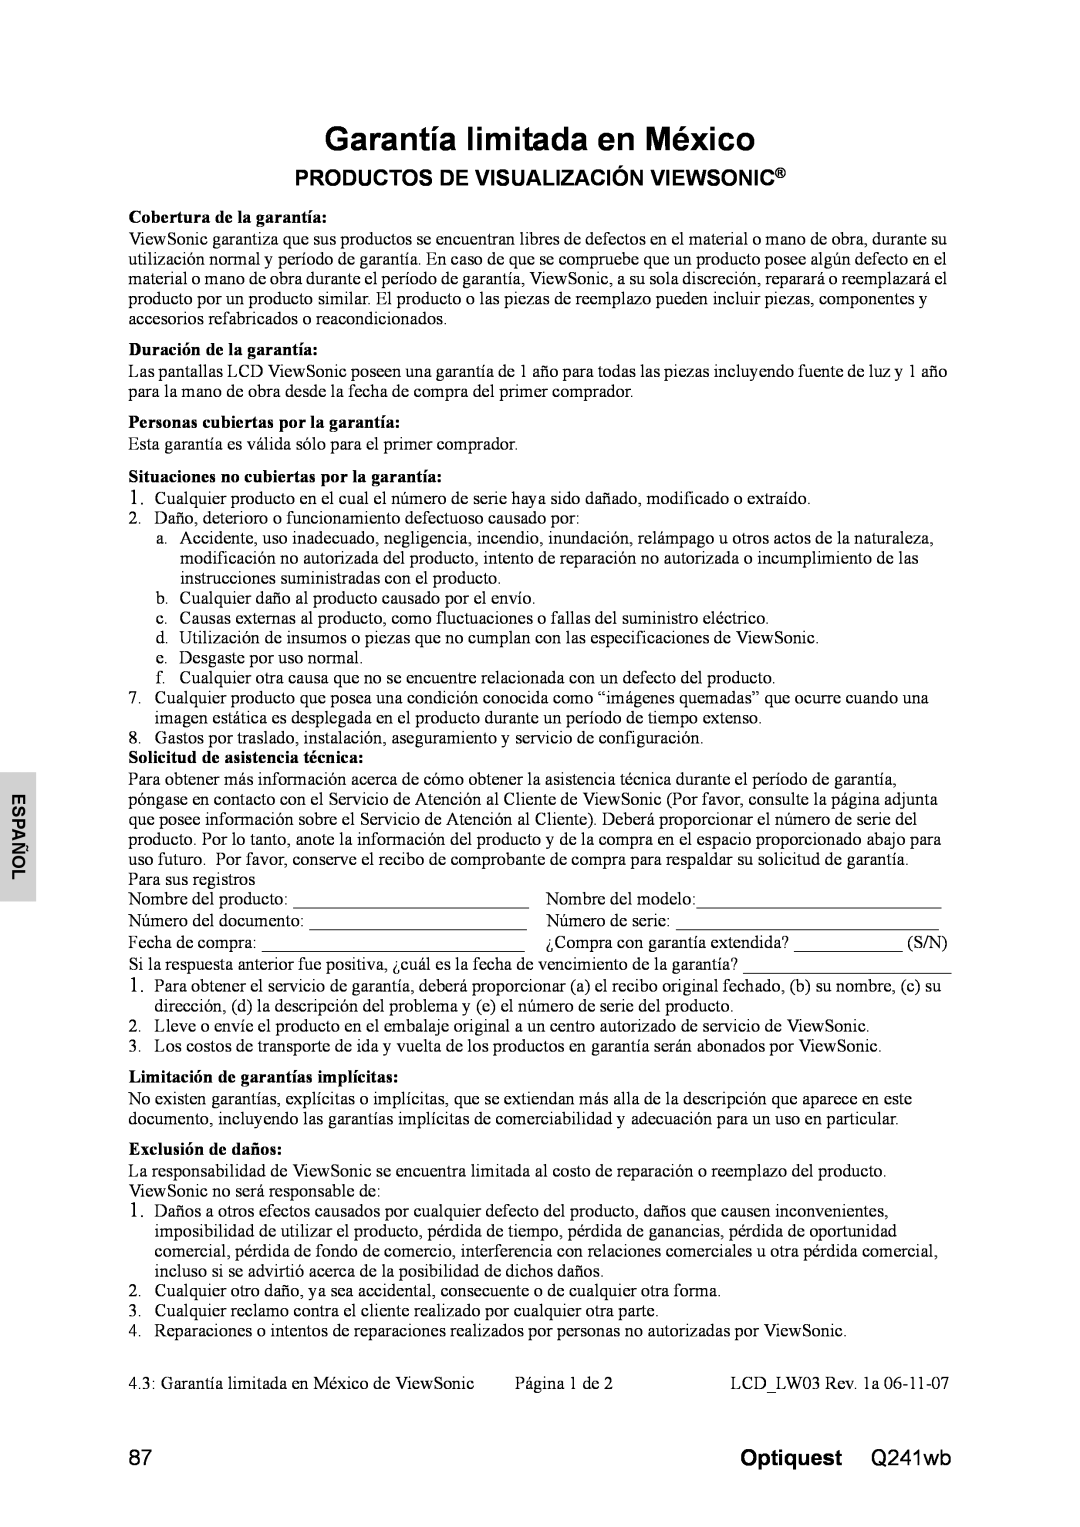 Optiquest VS12108 manual Garantía limitada en México, Español, Cobertura de la garantía, Duración de la garantía 